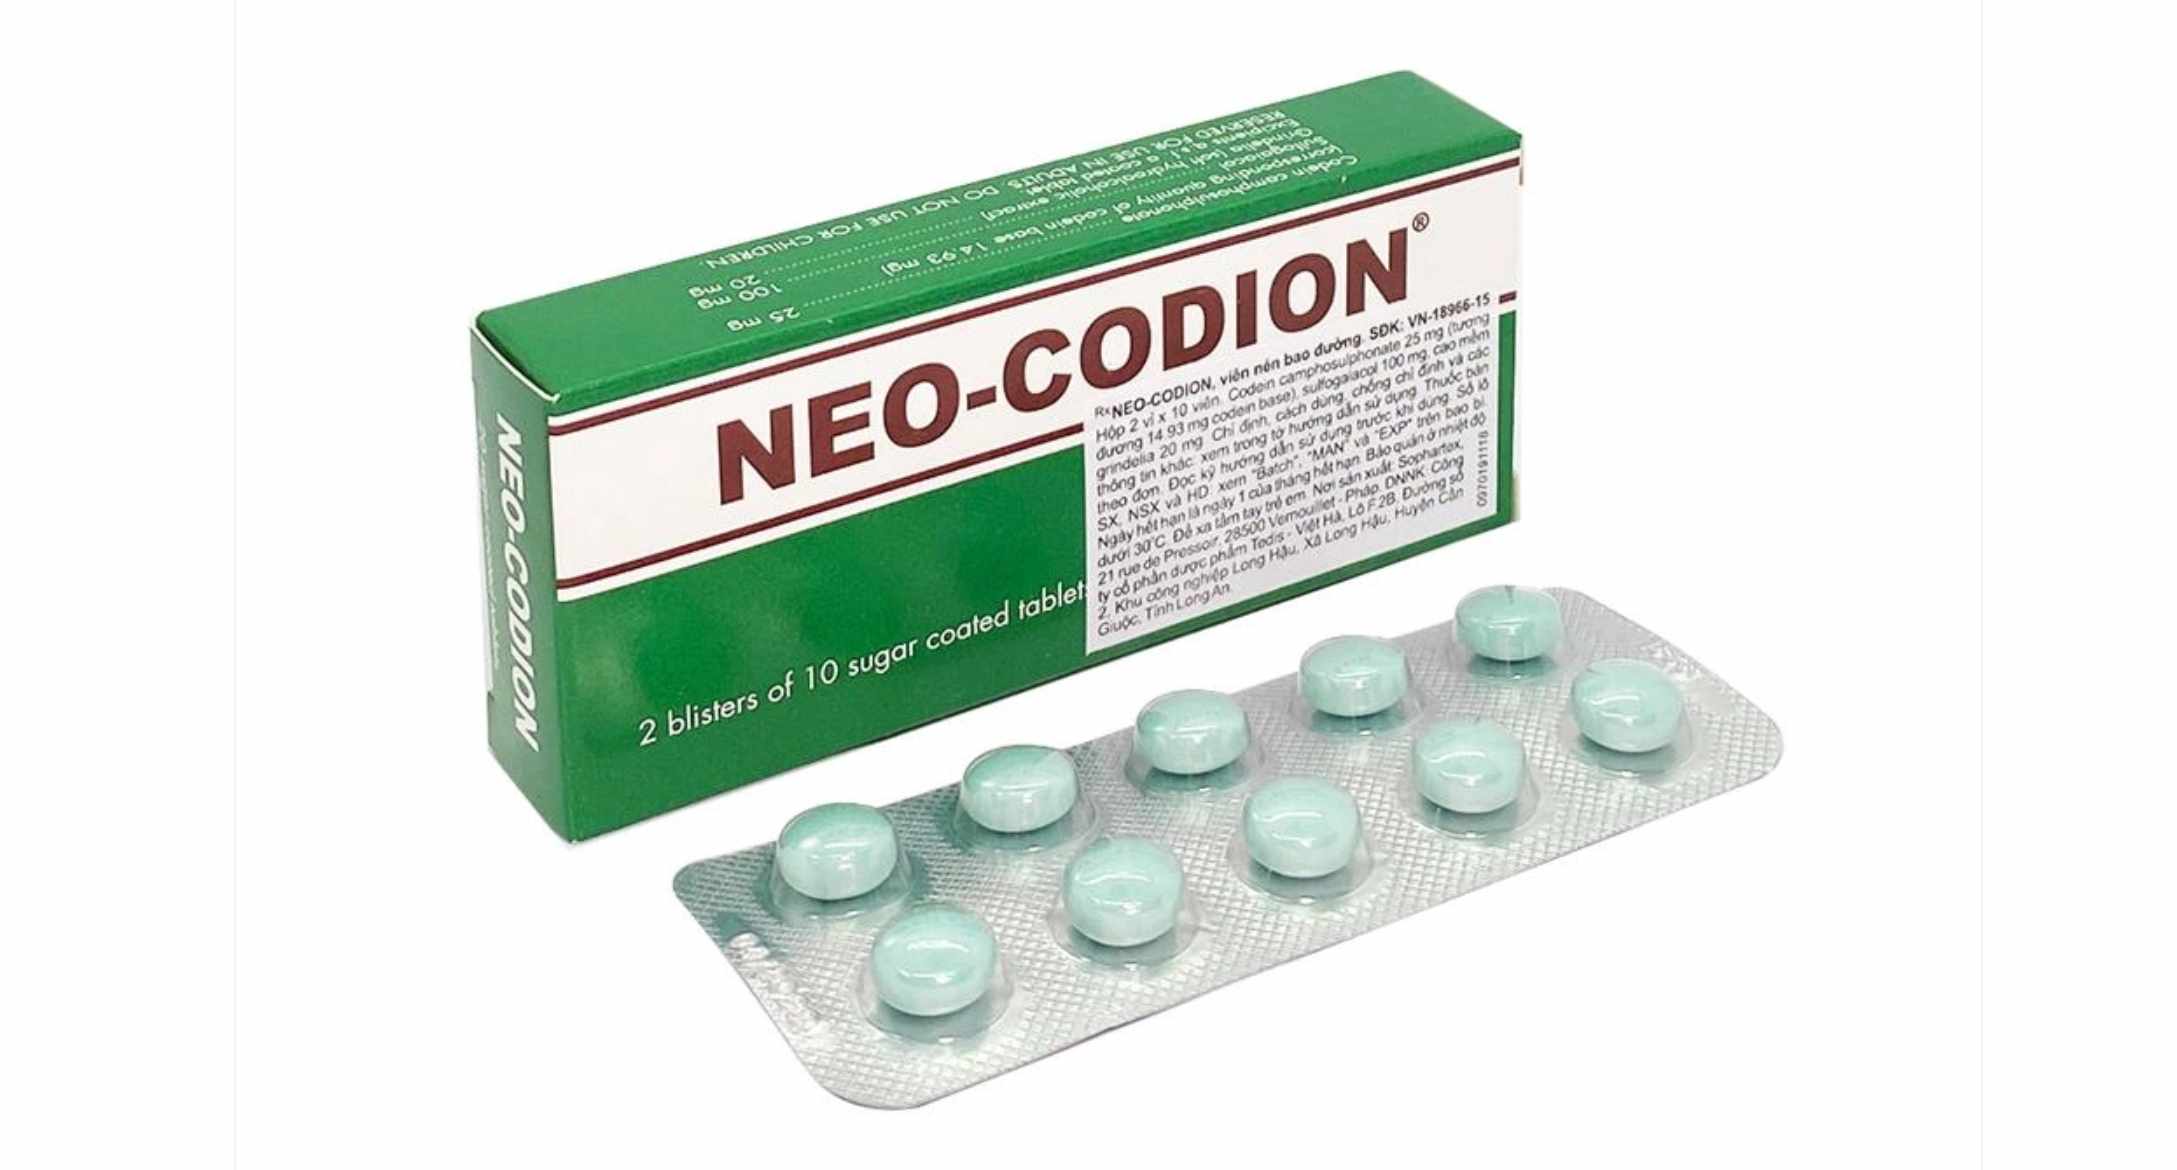 Thuốc ho Neo-Codion có tác dụng mạnh, cần được sử dụng theo đơn kê